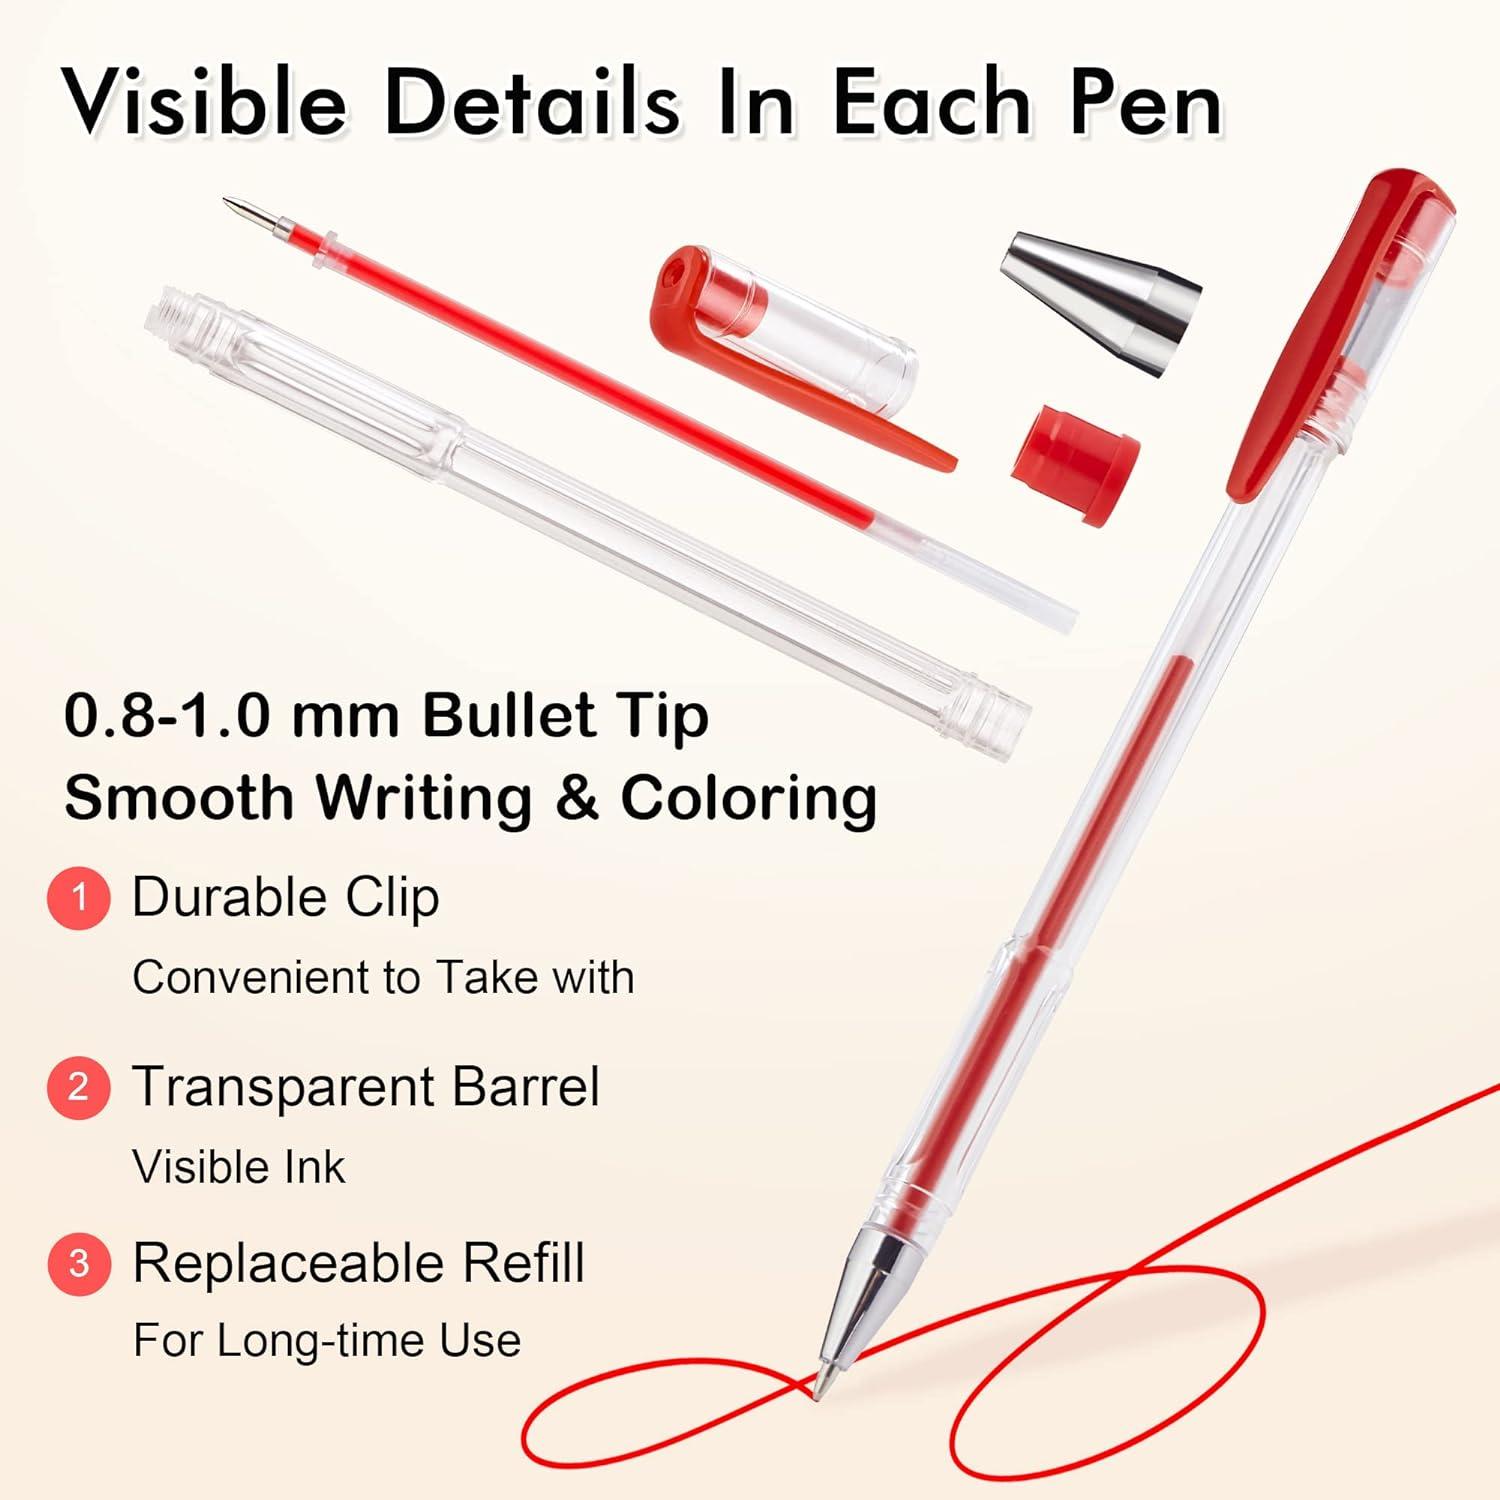 Shuttle Art 120 Unique Colors (No Duplicates) Gel Pens Gel Pen Set